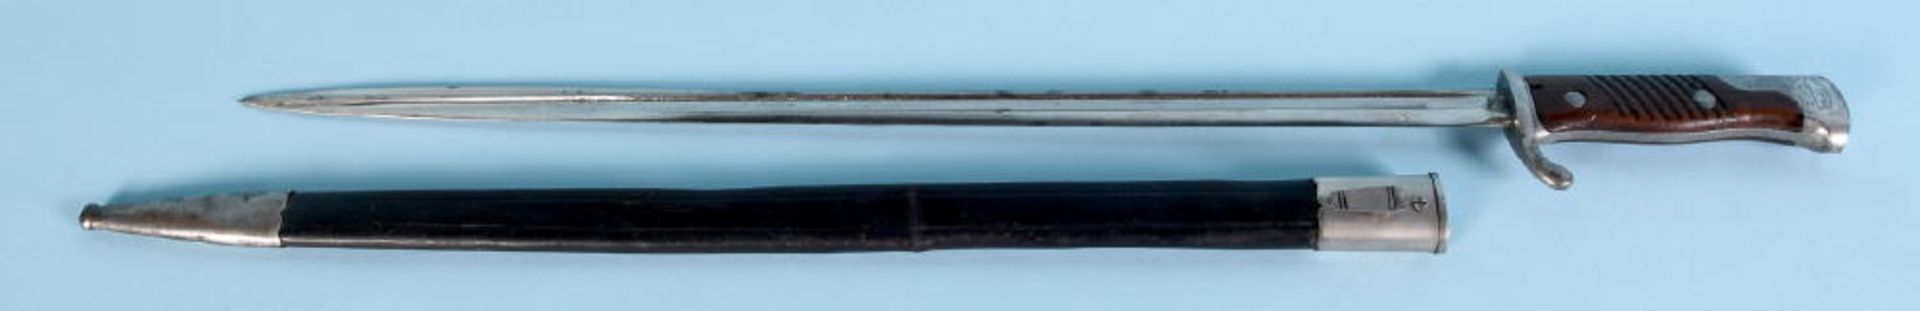 Bajonett - ParadebajonettStahl, Griffschalen Holz, Lederscheide, L= 67 cm, 1. WeltkriegBajonett -